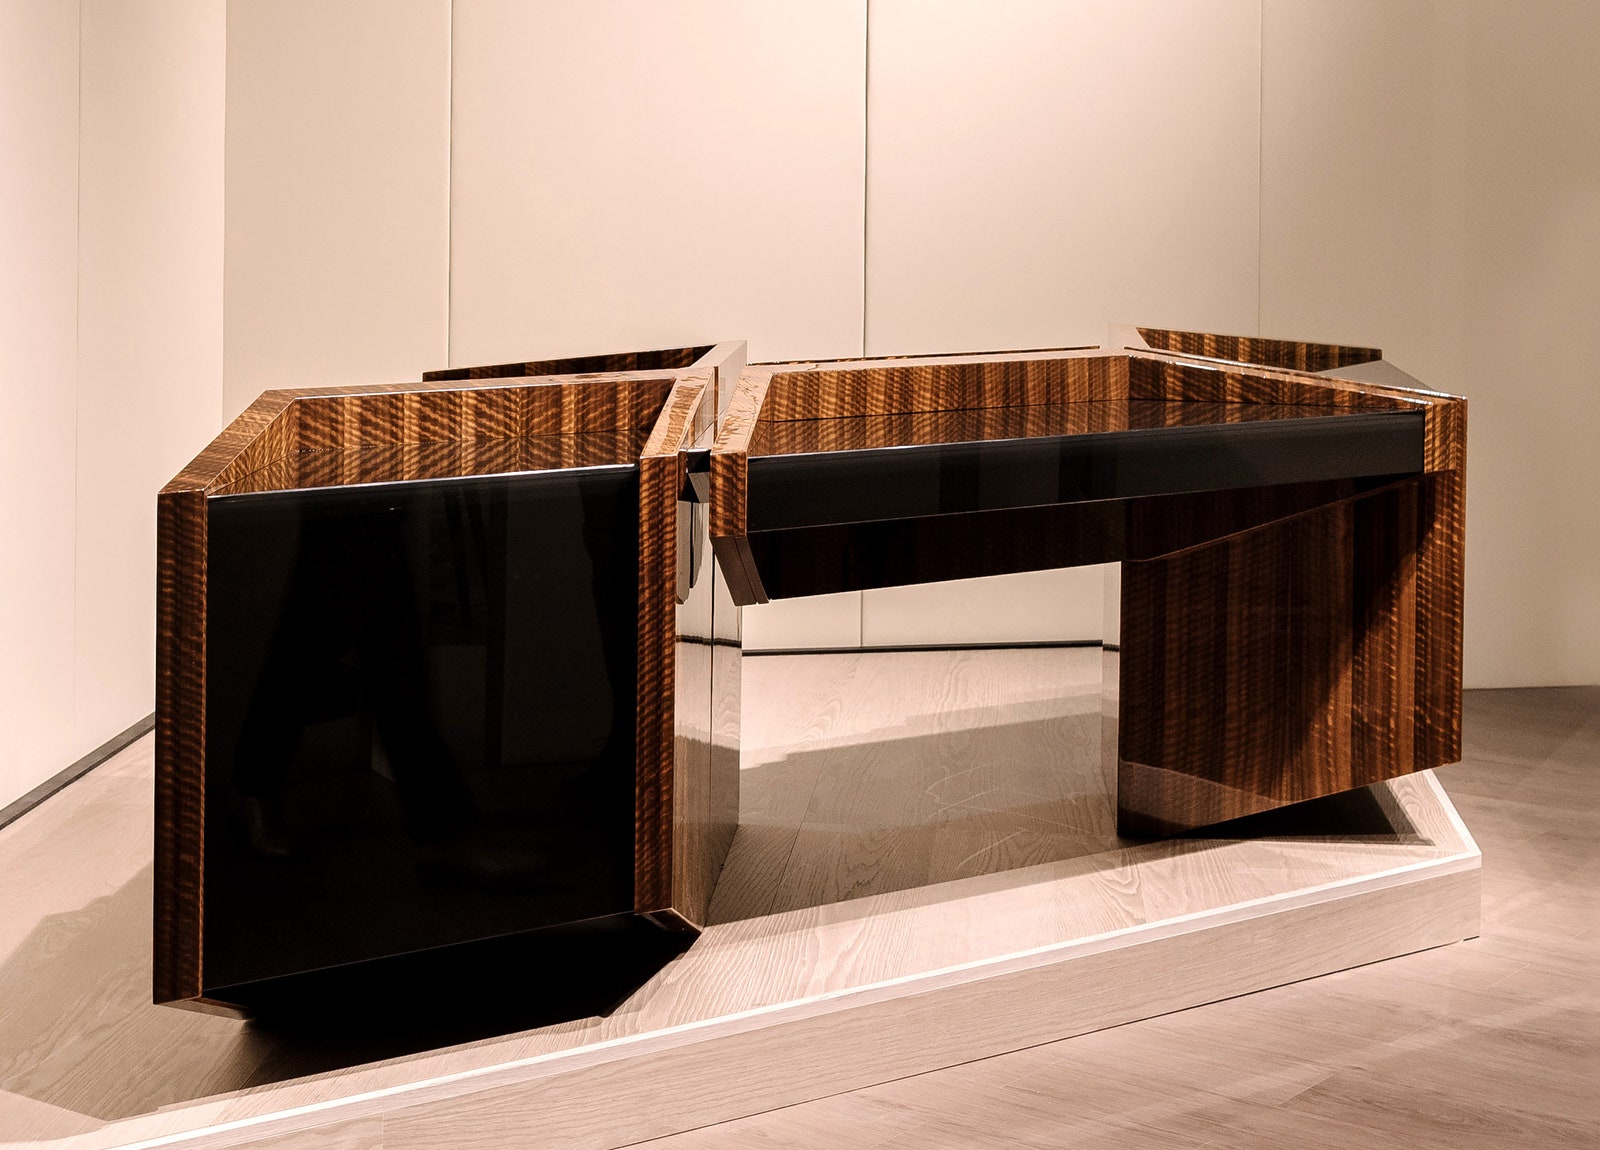 Стол по проекту архитектора для итальянского бренда Turri. Либескинд использовал в проектировании самые дорогие...